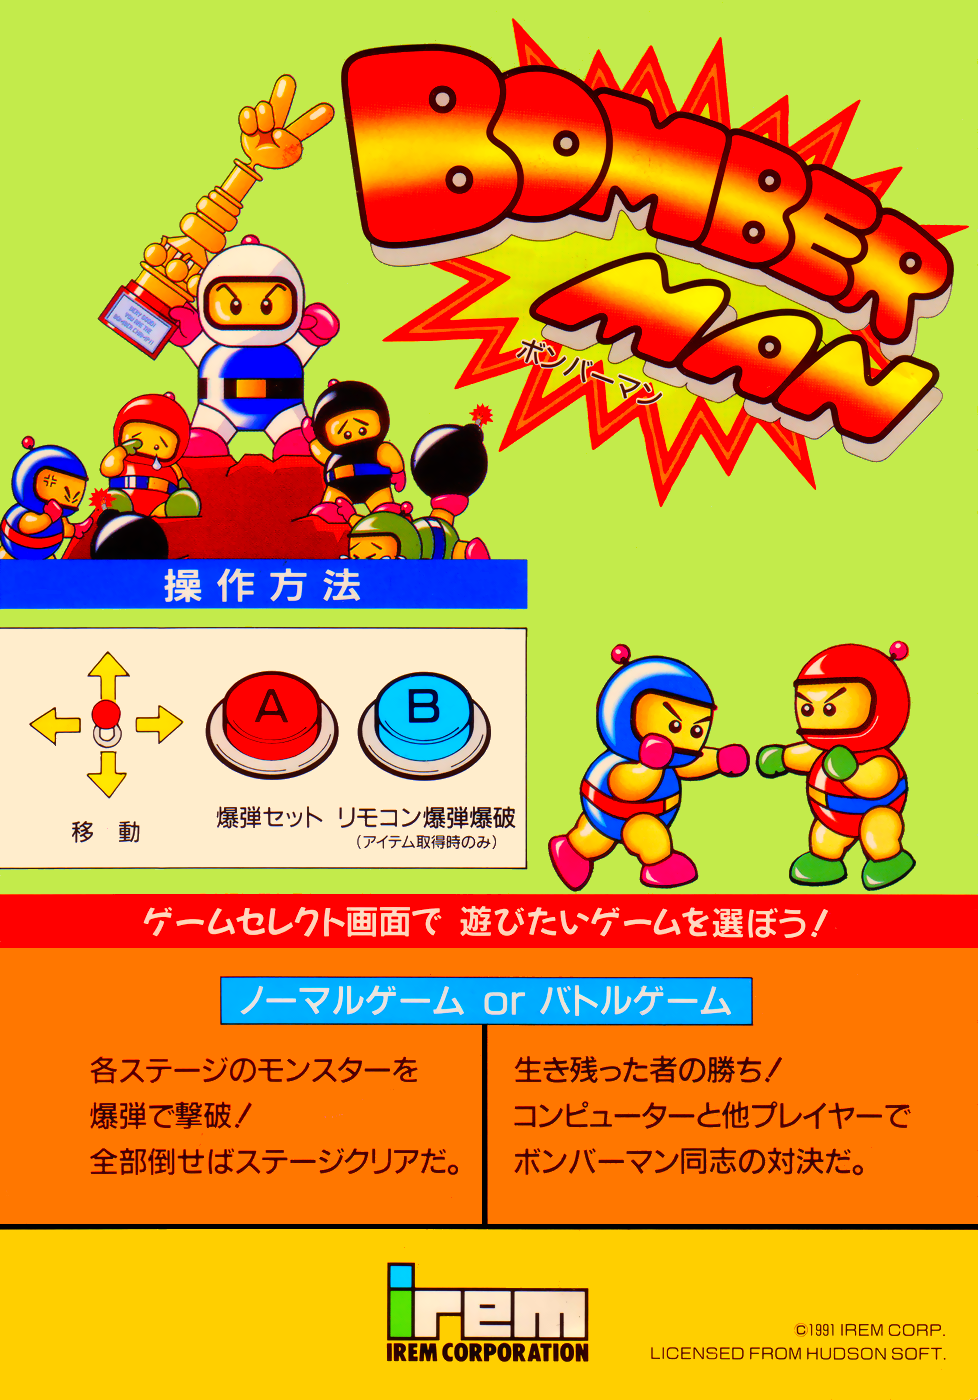 Bomberman II (1991)